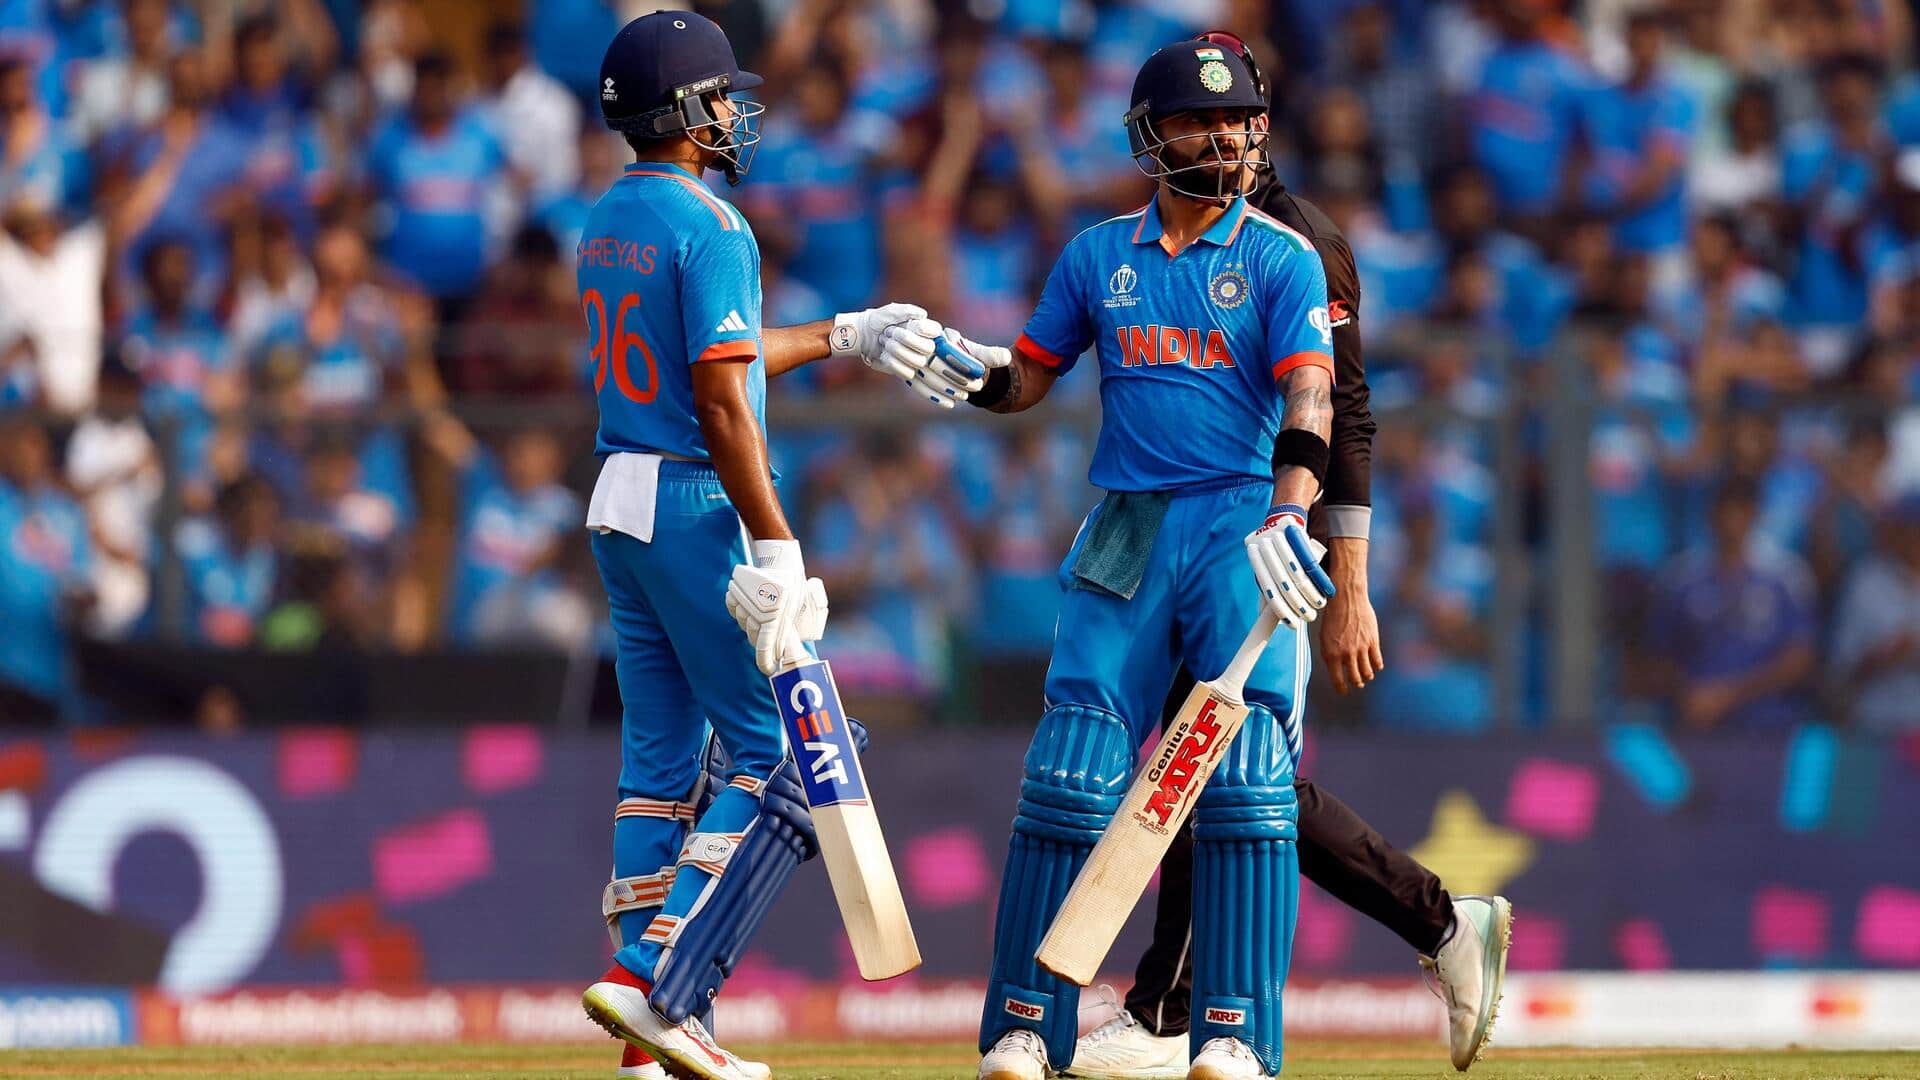 विश्व कप 2023: भारत ने न्यूजीलैंड को दिया 398 रनों का लक्ष्य, कोहली-श्रेयस की शतकीय पारियां 